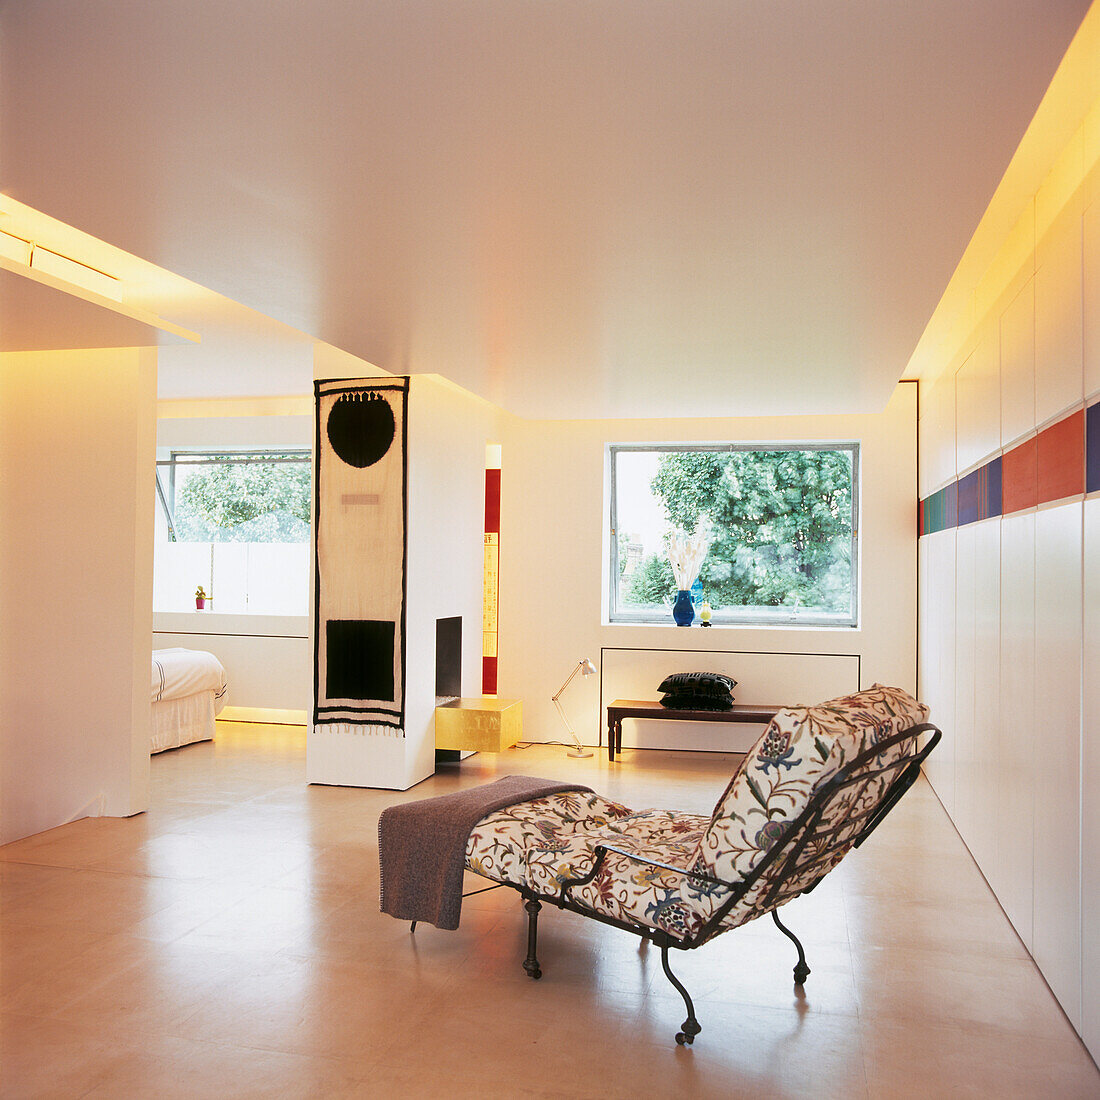 Moderner, offener Wohnbereich mit geblümtem Schlafsofa und Raumbeleuchtung hinter der Zwischendecke